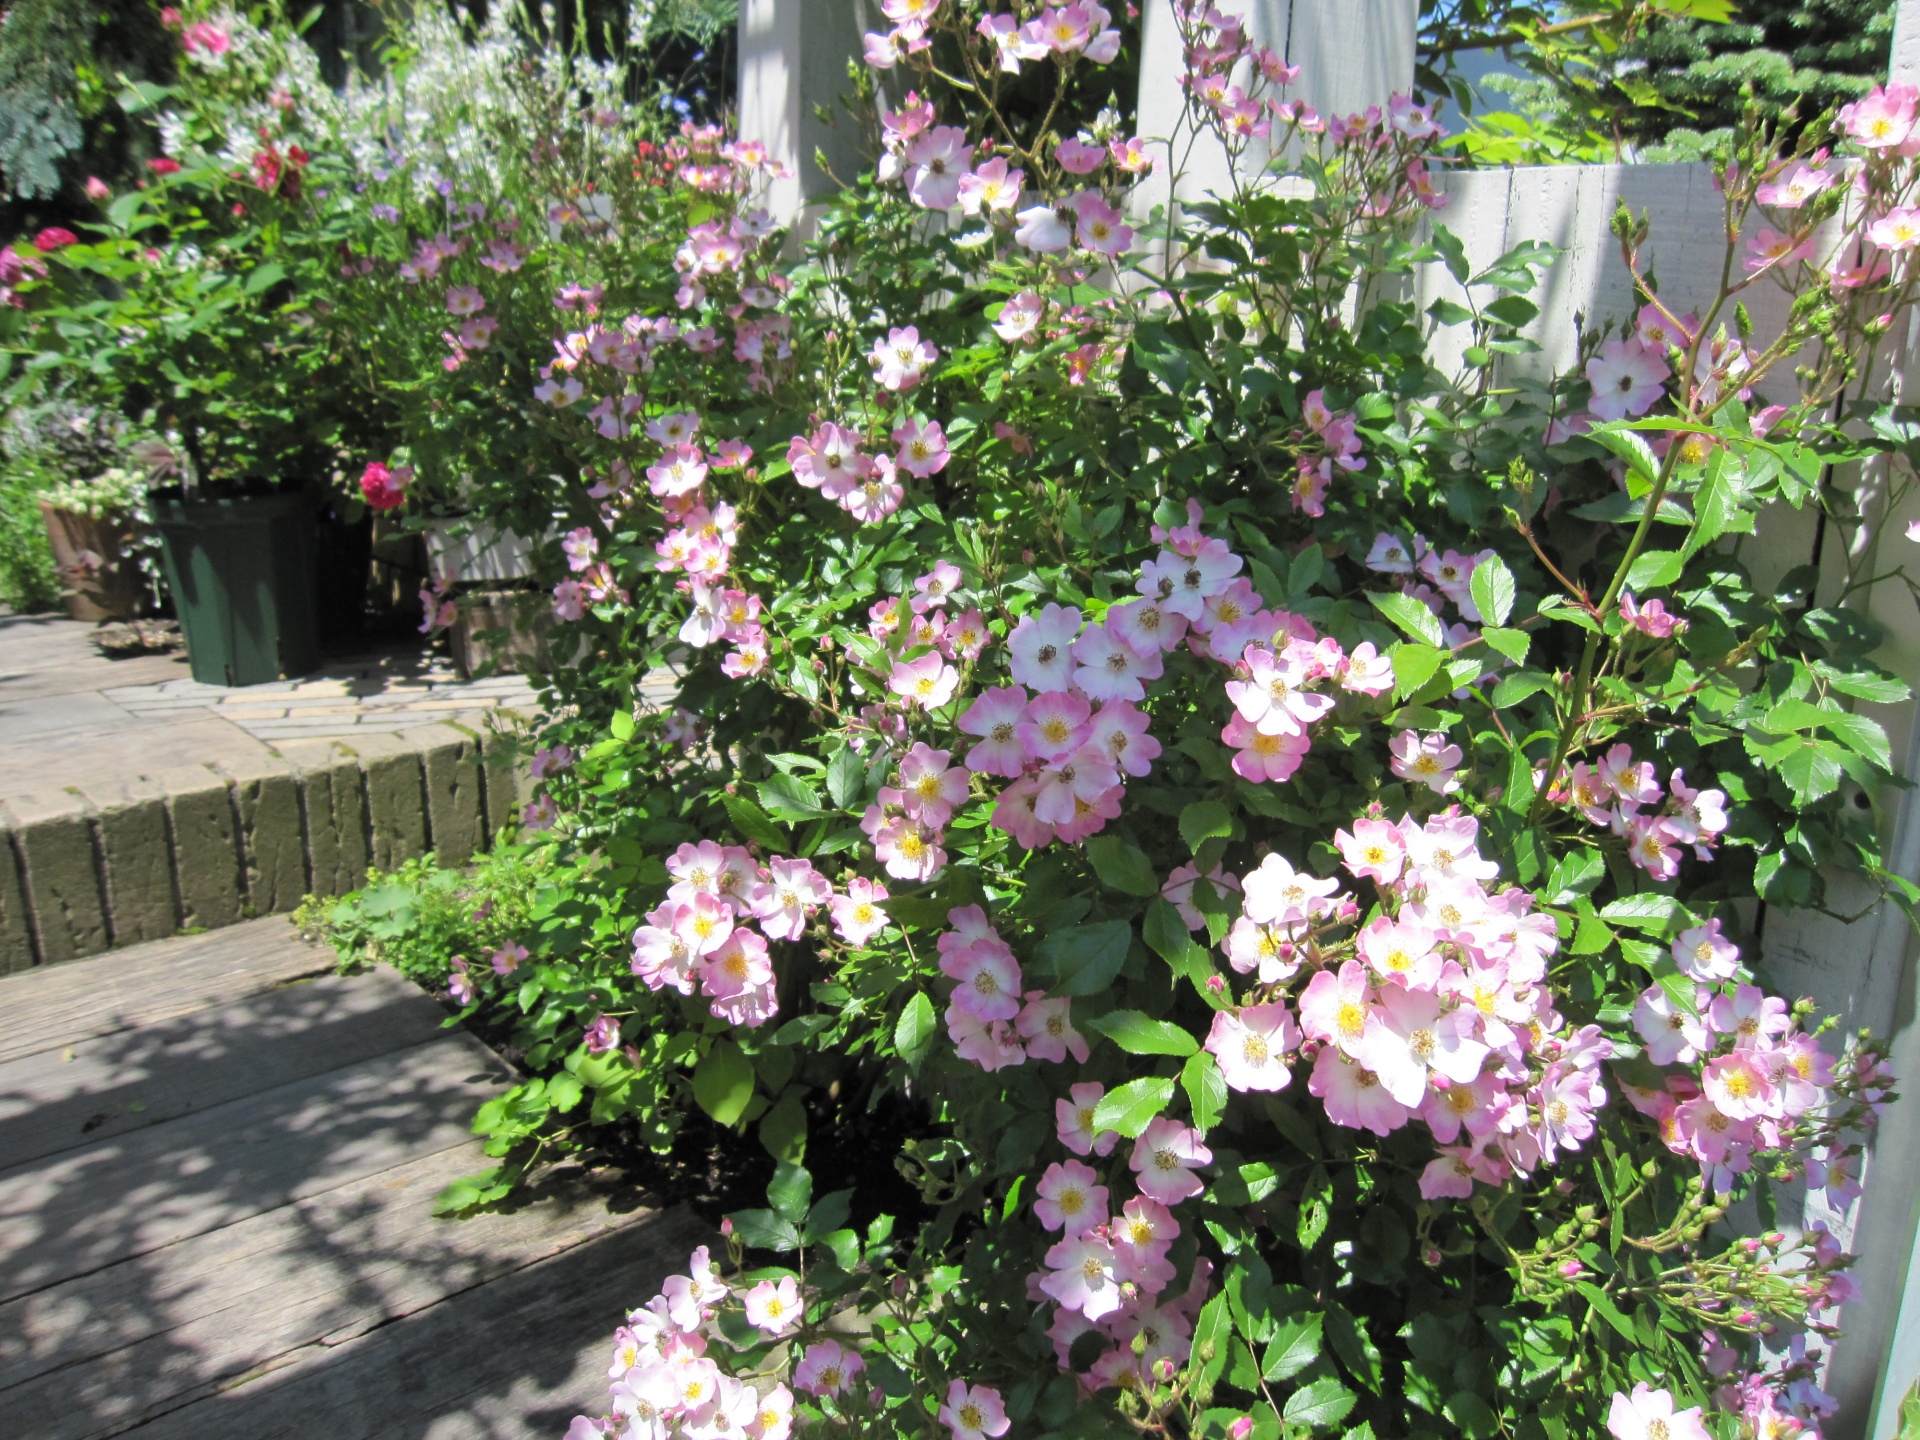 バラシーズン到来 札幌 マイガーデンの庭人niwanchuブログ